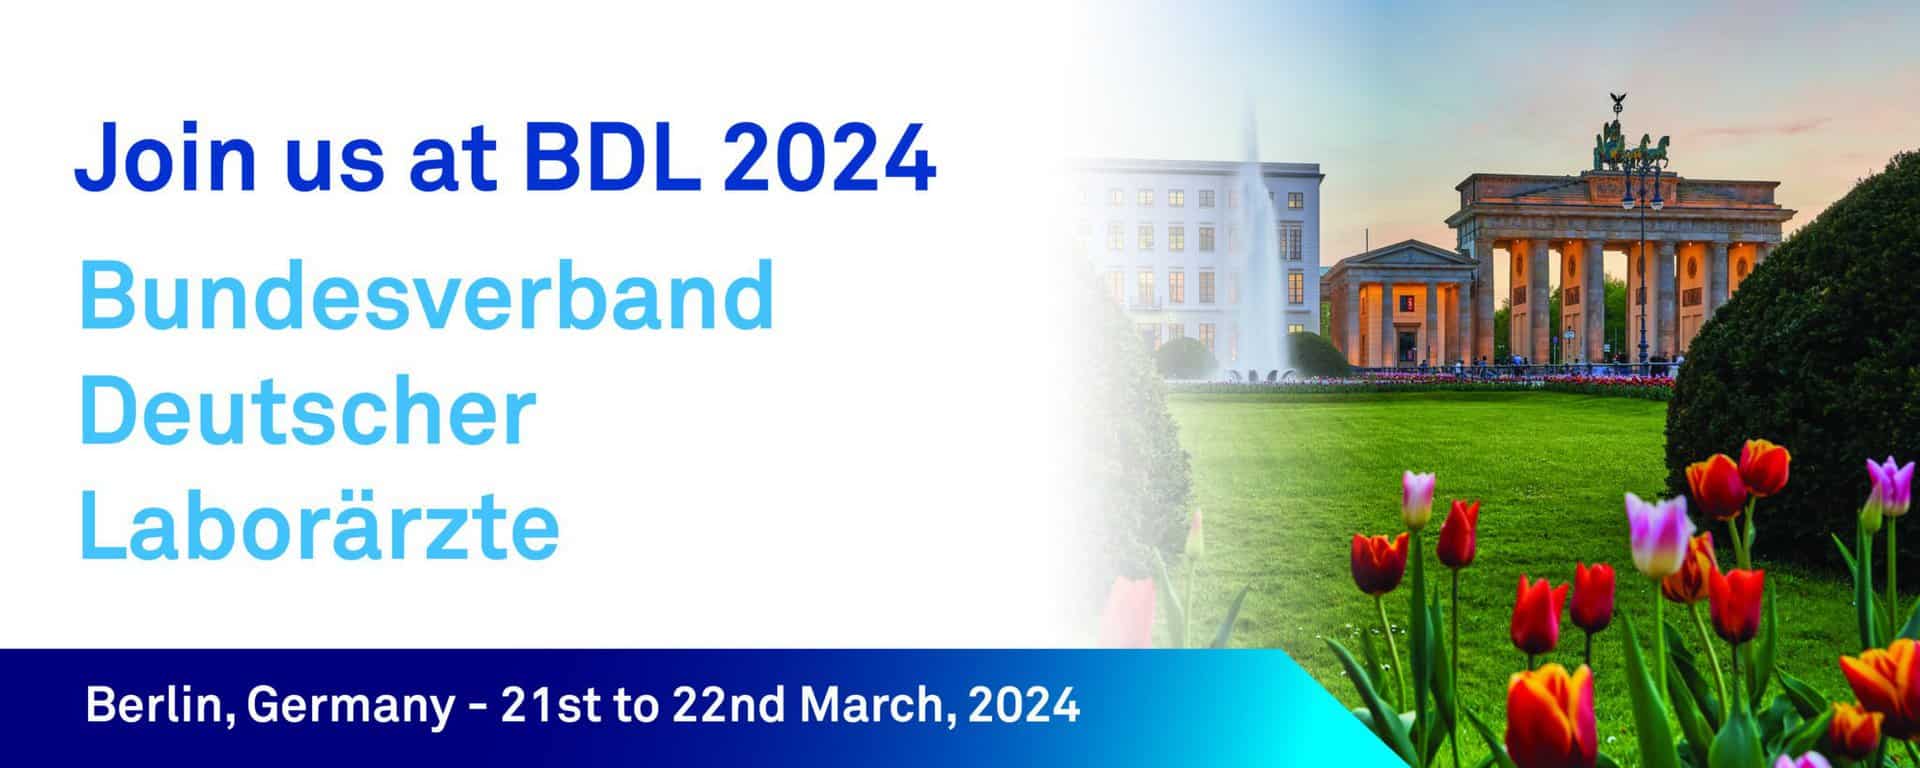 BDL 2024 linkedin thumbnail